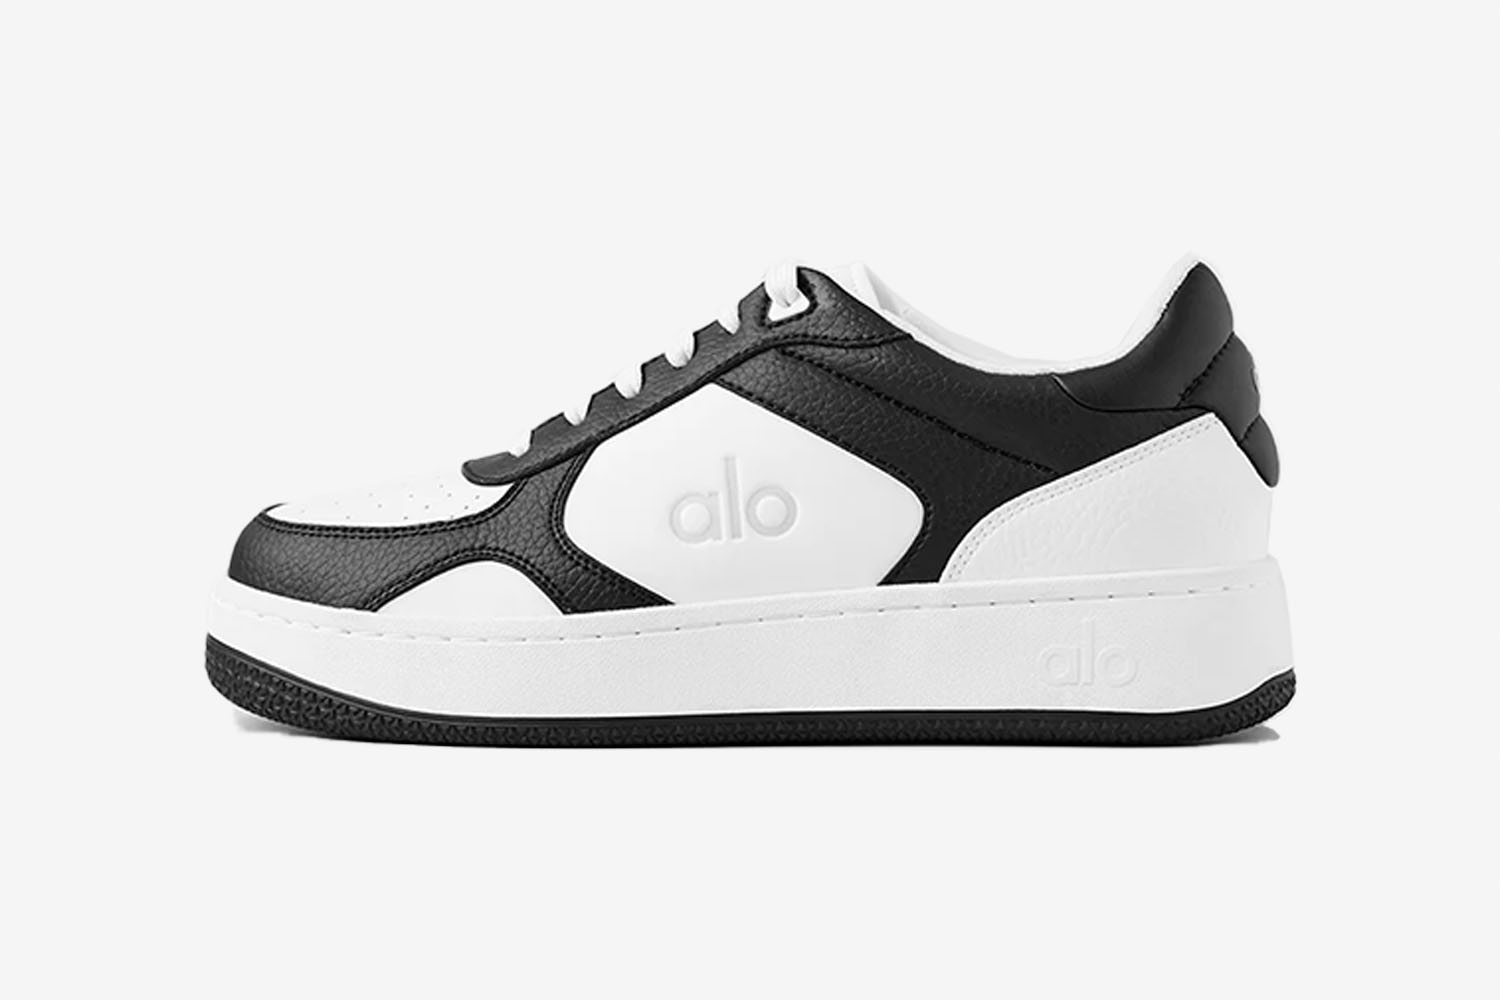 Alo Yoga ALO x 01 Classic Sneaker